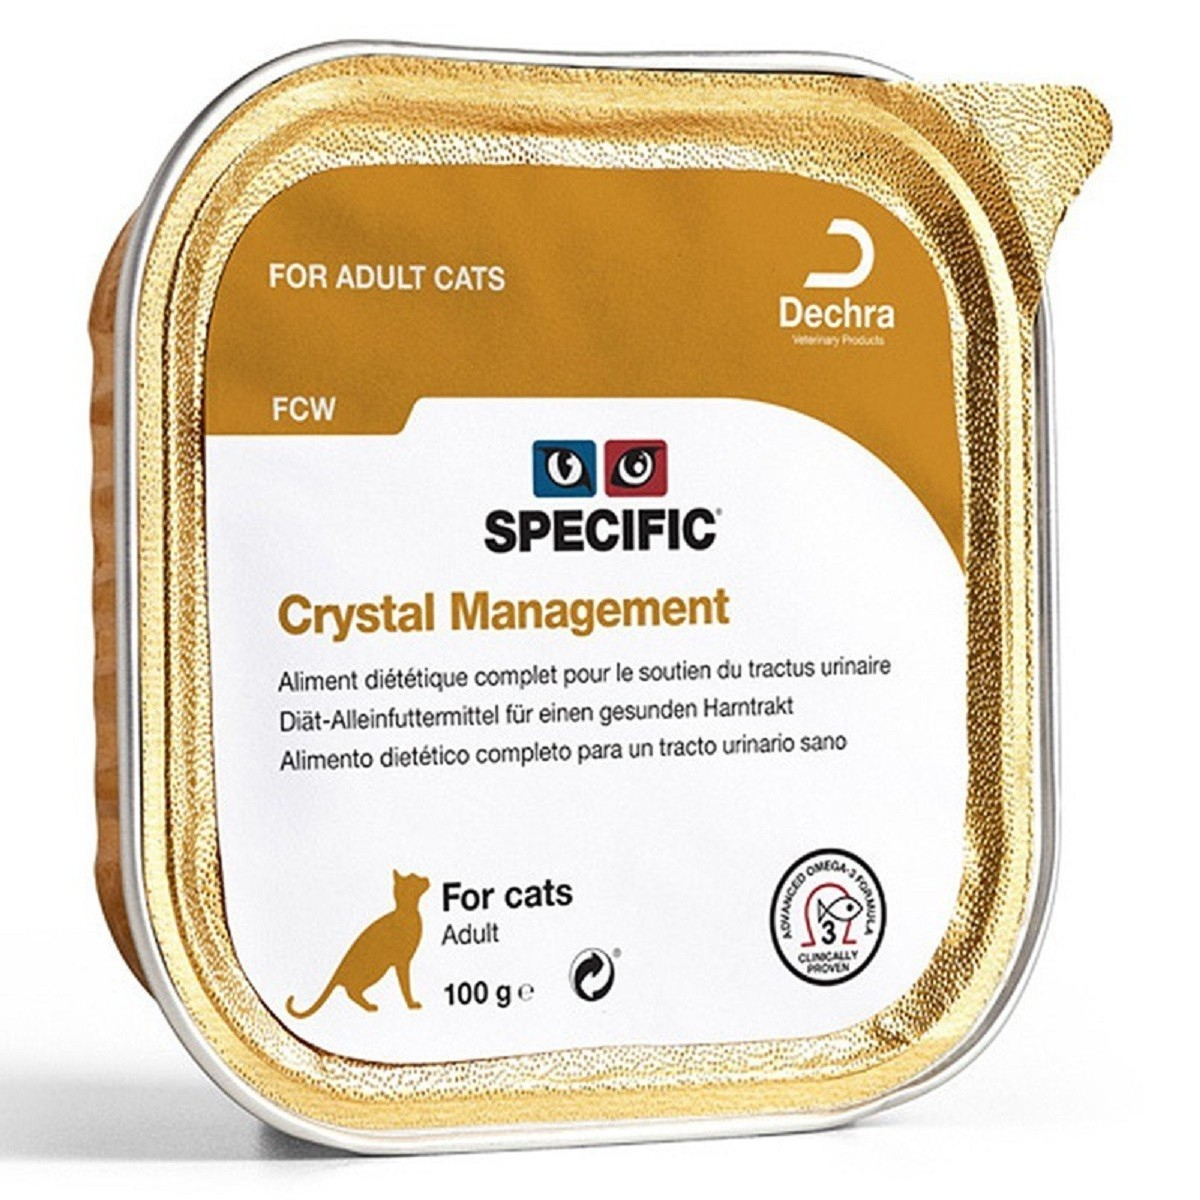 Confezione di 7 Patè SPECIFIC FCW Crystal Management 100g per Gatti Adulti